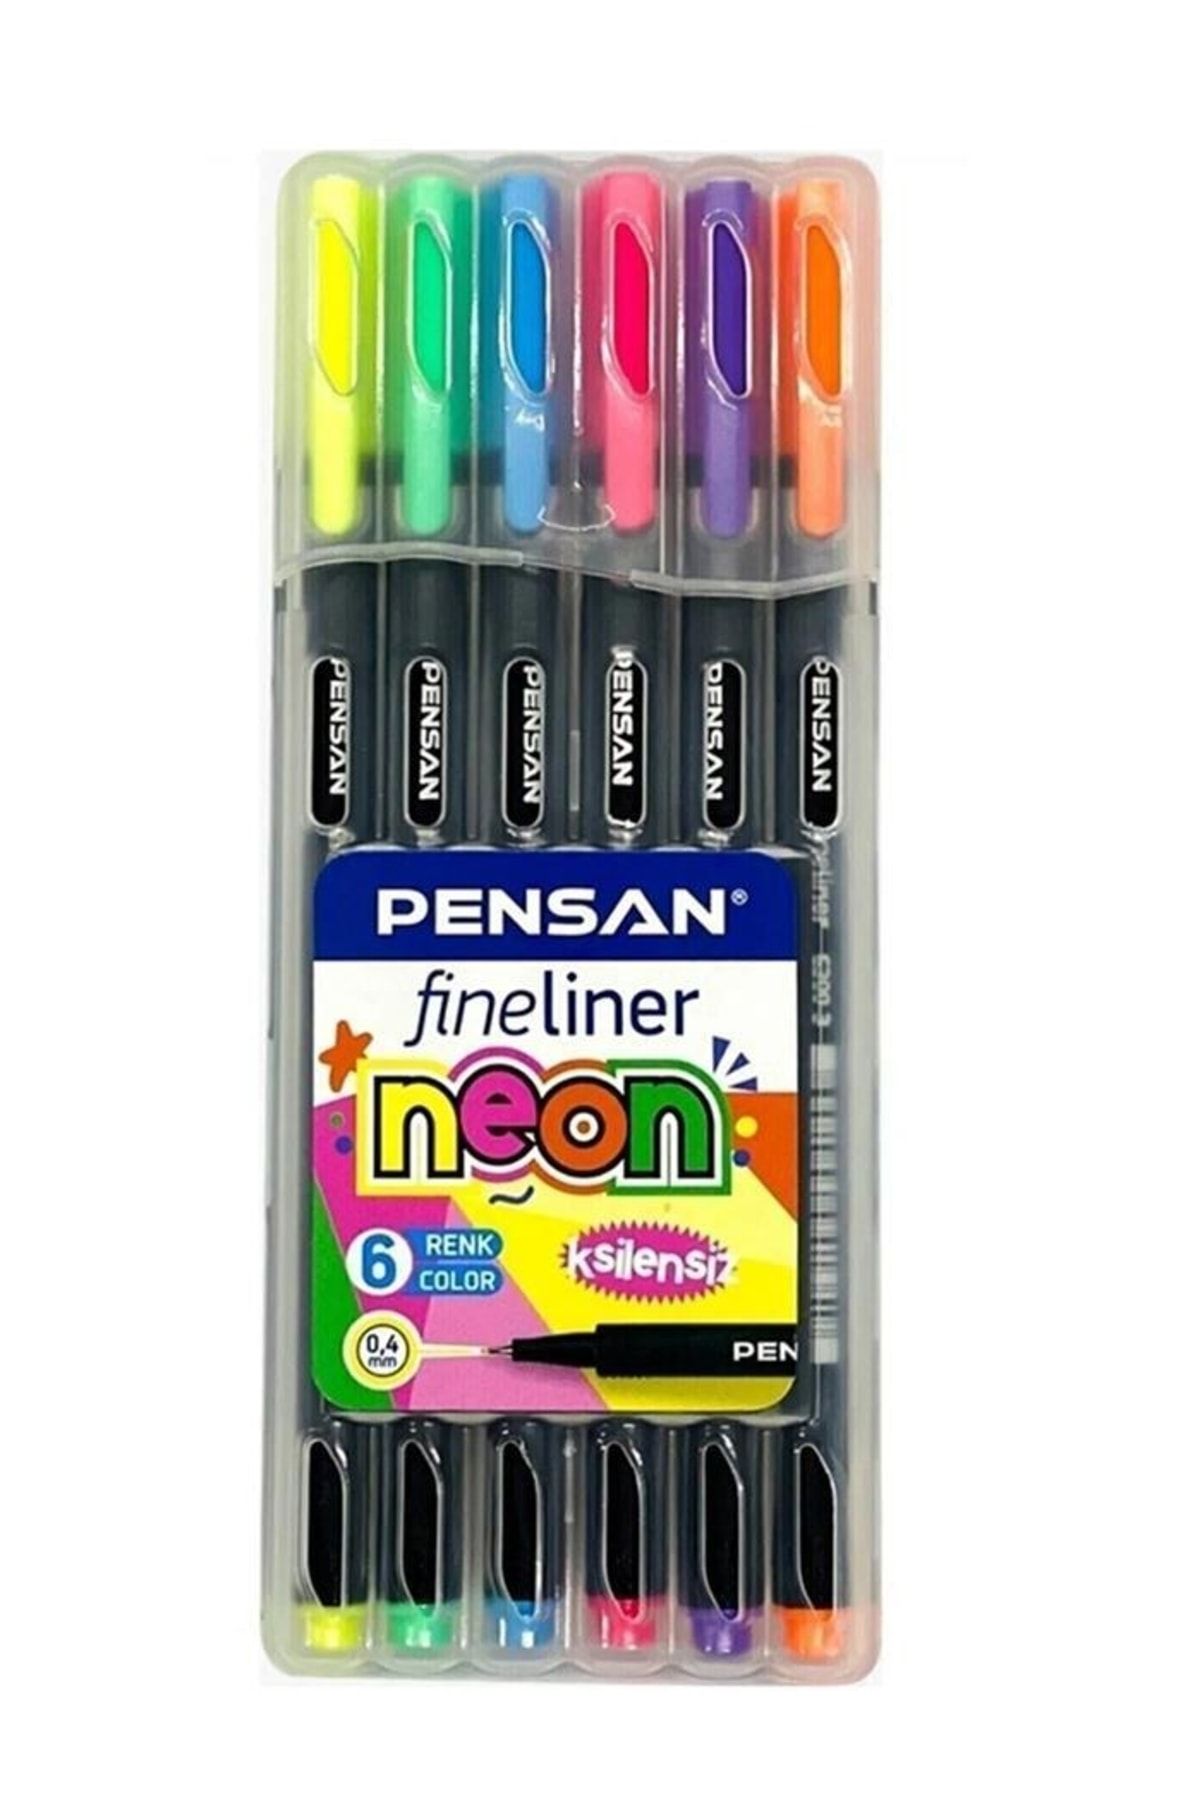 Pensan Fineliner 6 Neon Renk 0.4mm Ince Keçe Uçlu Yazı Kalemi 1 Paket 6 Lı Neon Fineliner Kalem Seti